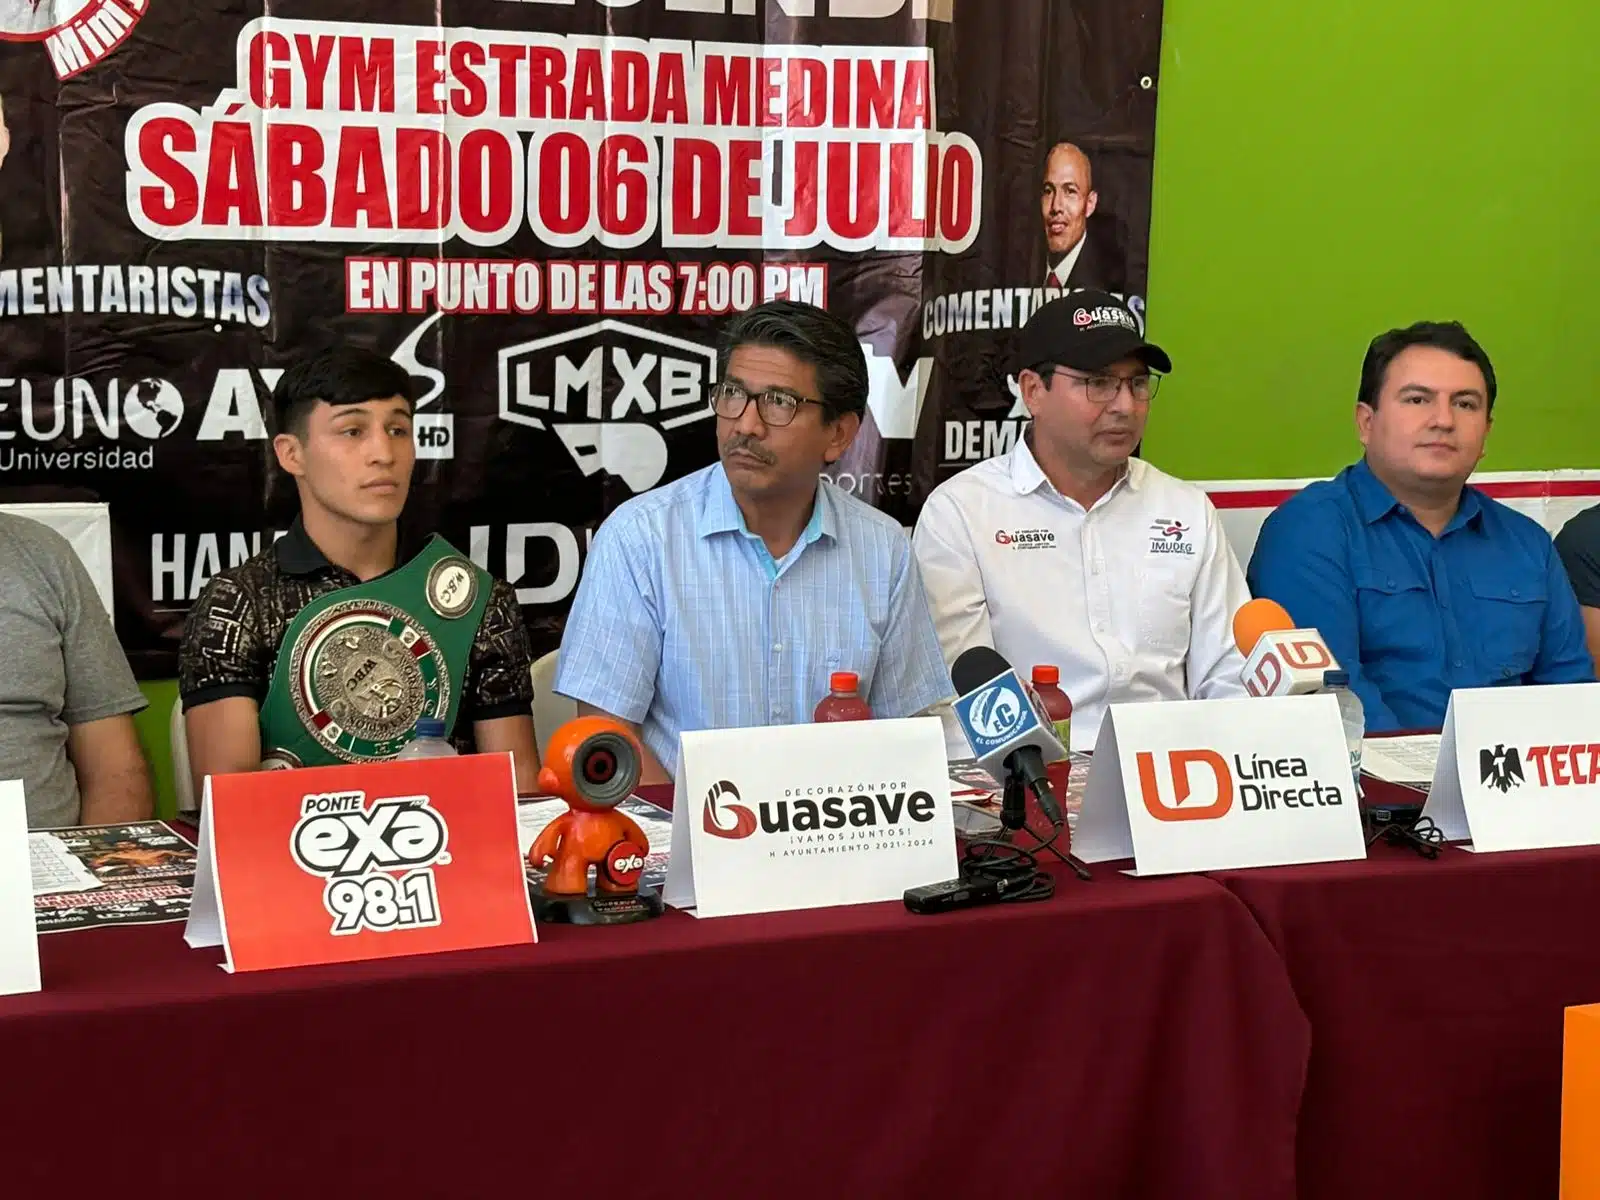 Kevin “Desvalagado” Villanueva en una conferencia de prensa en Guasave